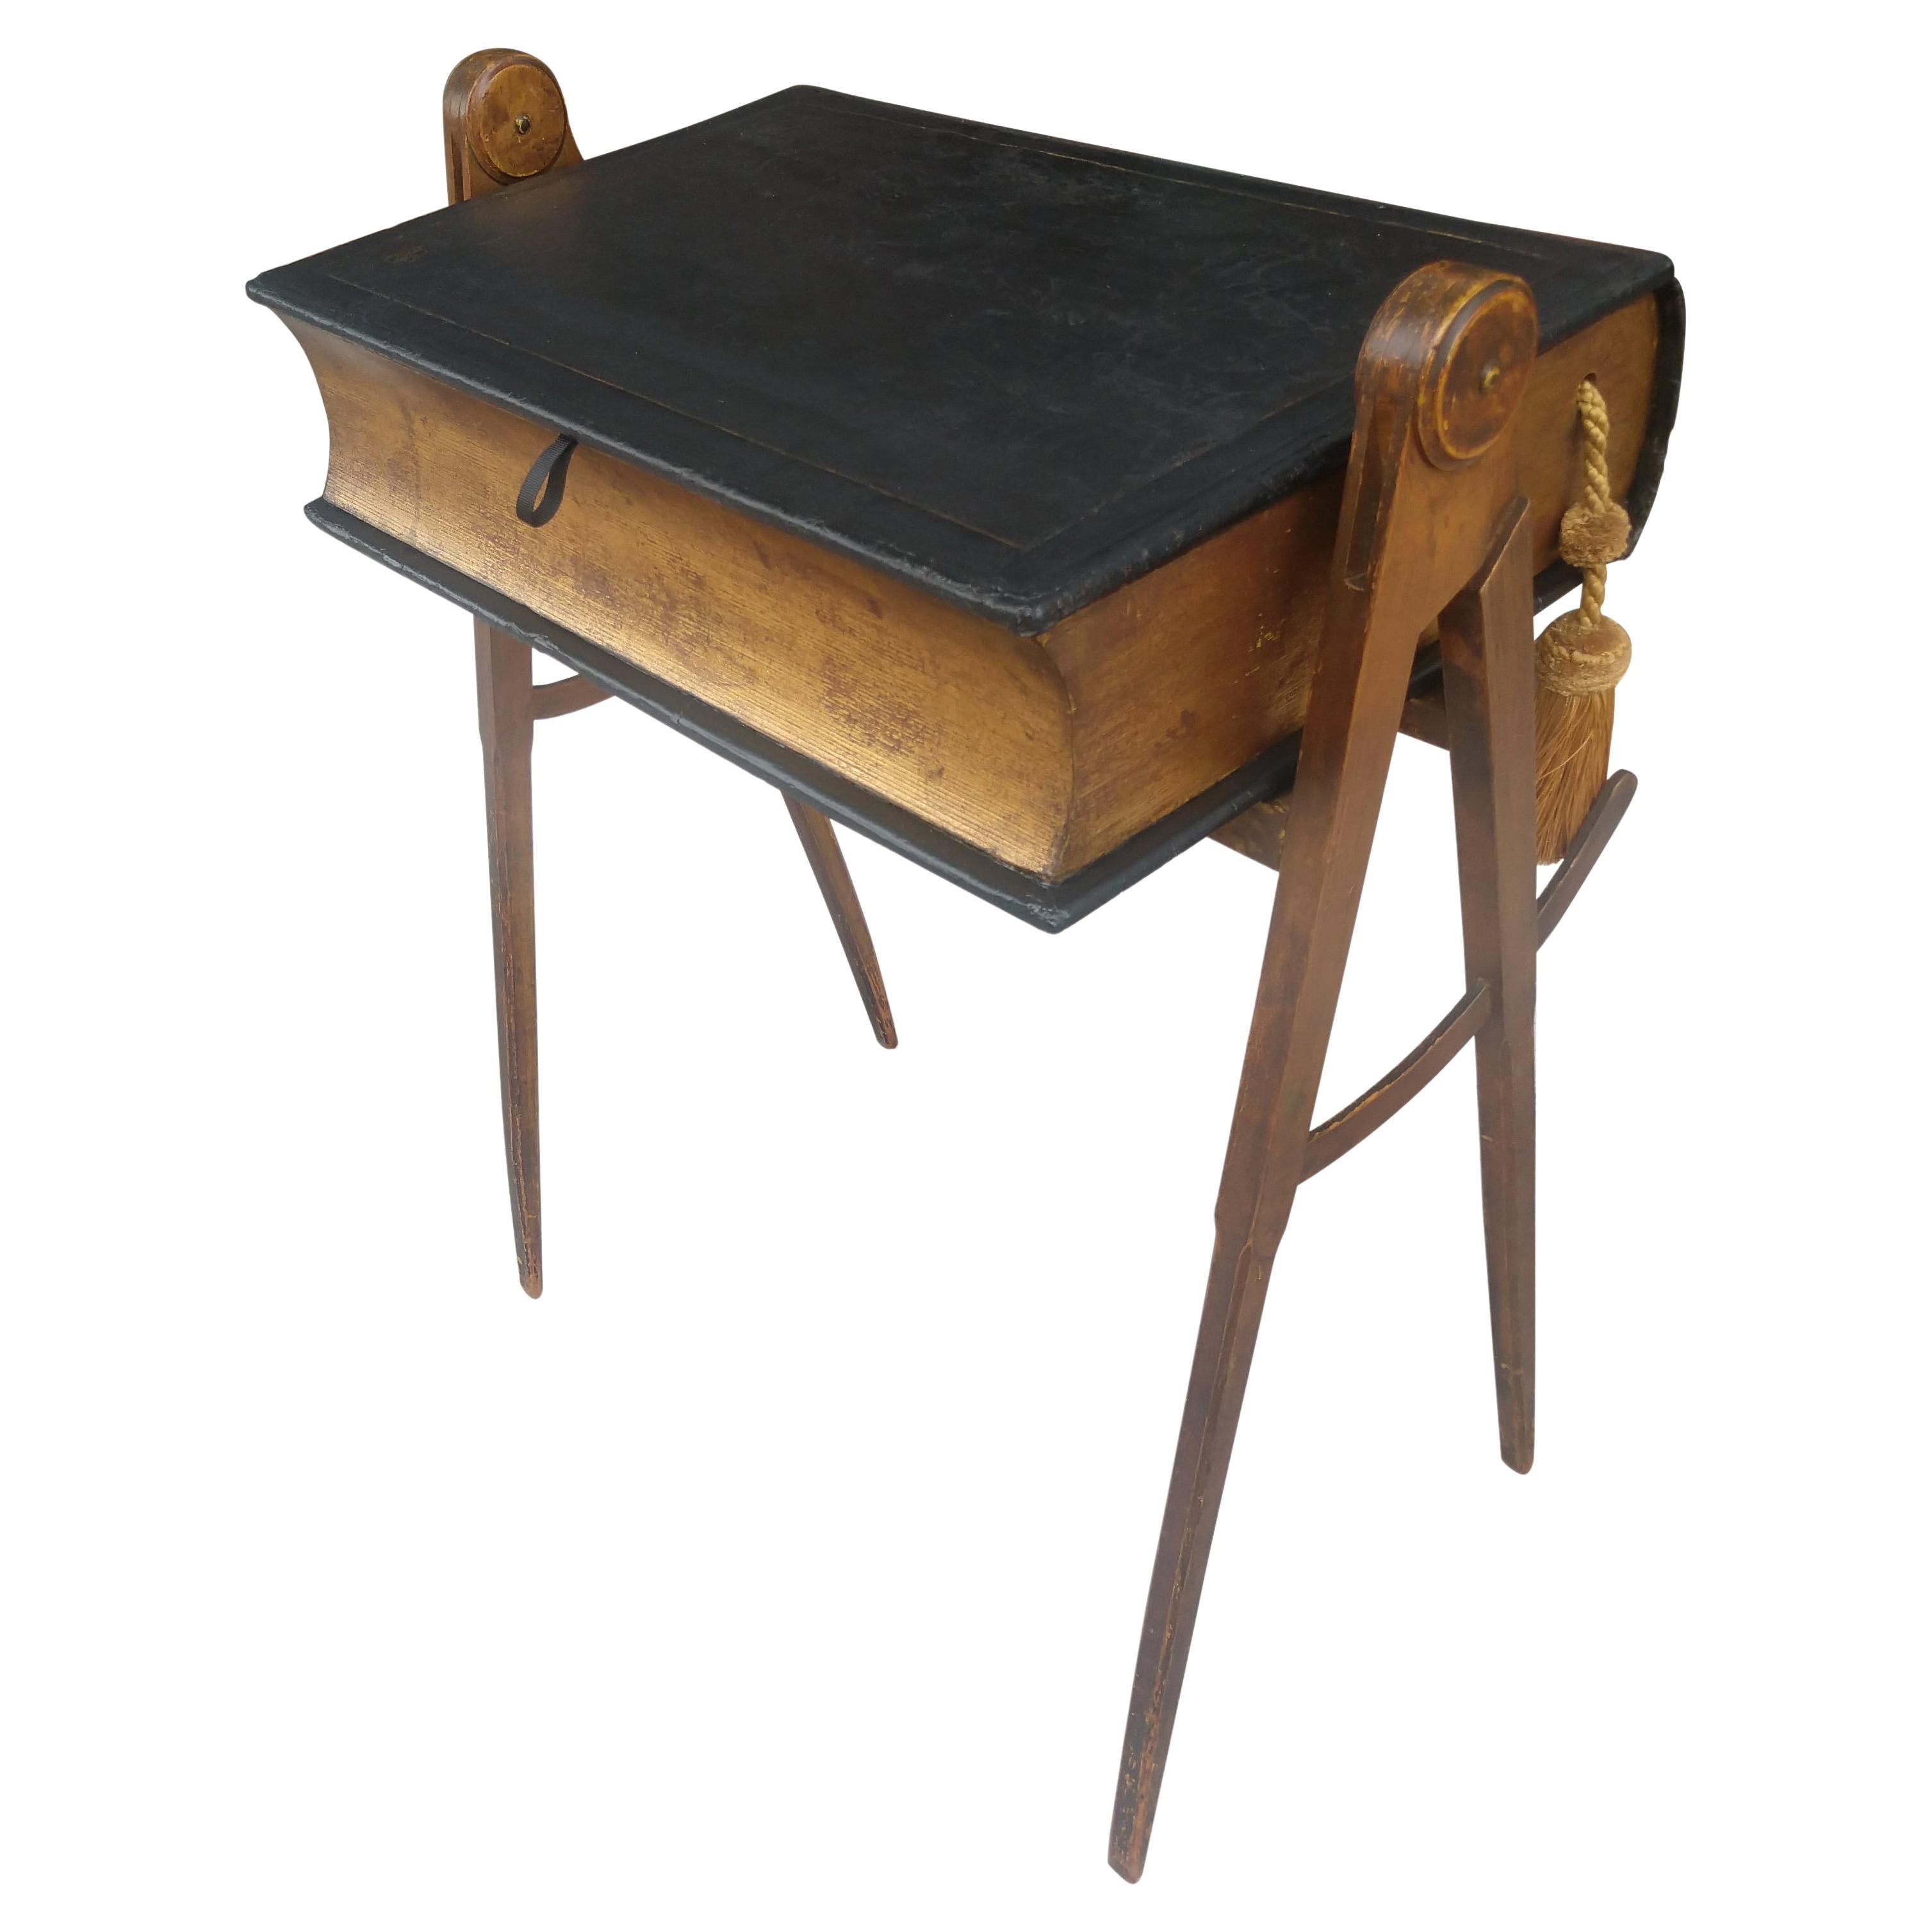 Masonischer Tisch des 19. Jahrhunderts mit Leder-Bücherregal Flip Deckel Kompass Beine